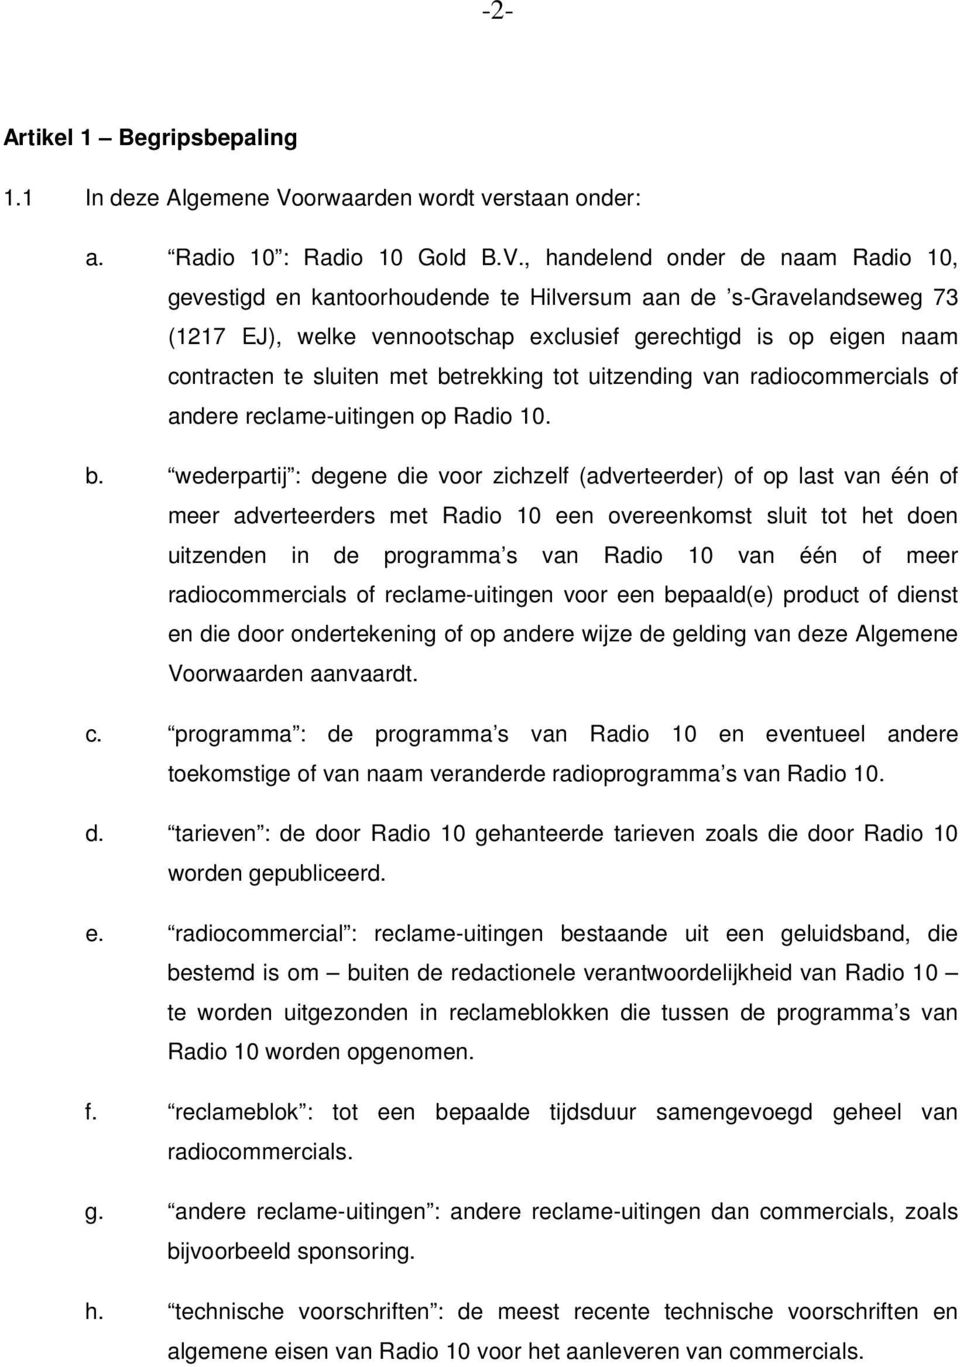 , handelend onder de naam Radio 10, gevestigd en kantoorhoudende te Hilversum aan de s-gravelandseweg 73 (1217 EJ), welke vennootschap exclusief gerechtigd is op eigen naam contracten te sluiten met